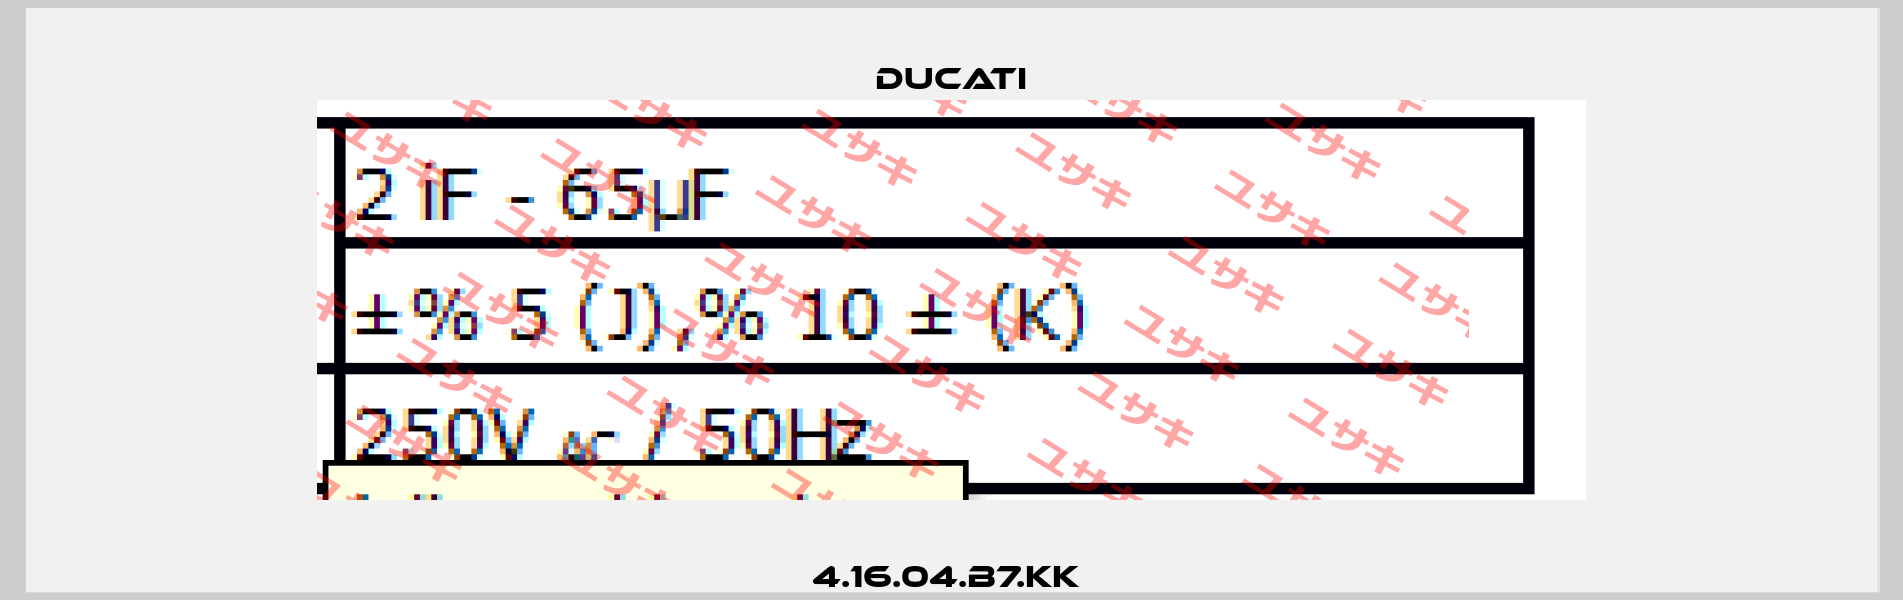 4.16.04.B7.KK  Ducati